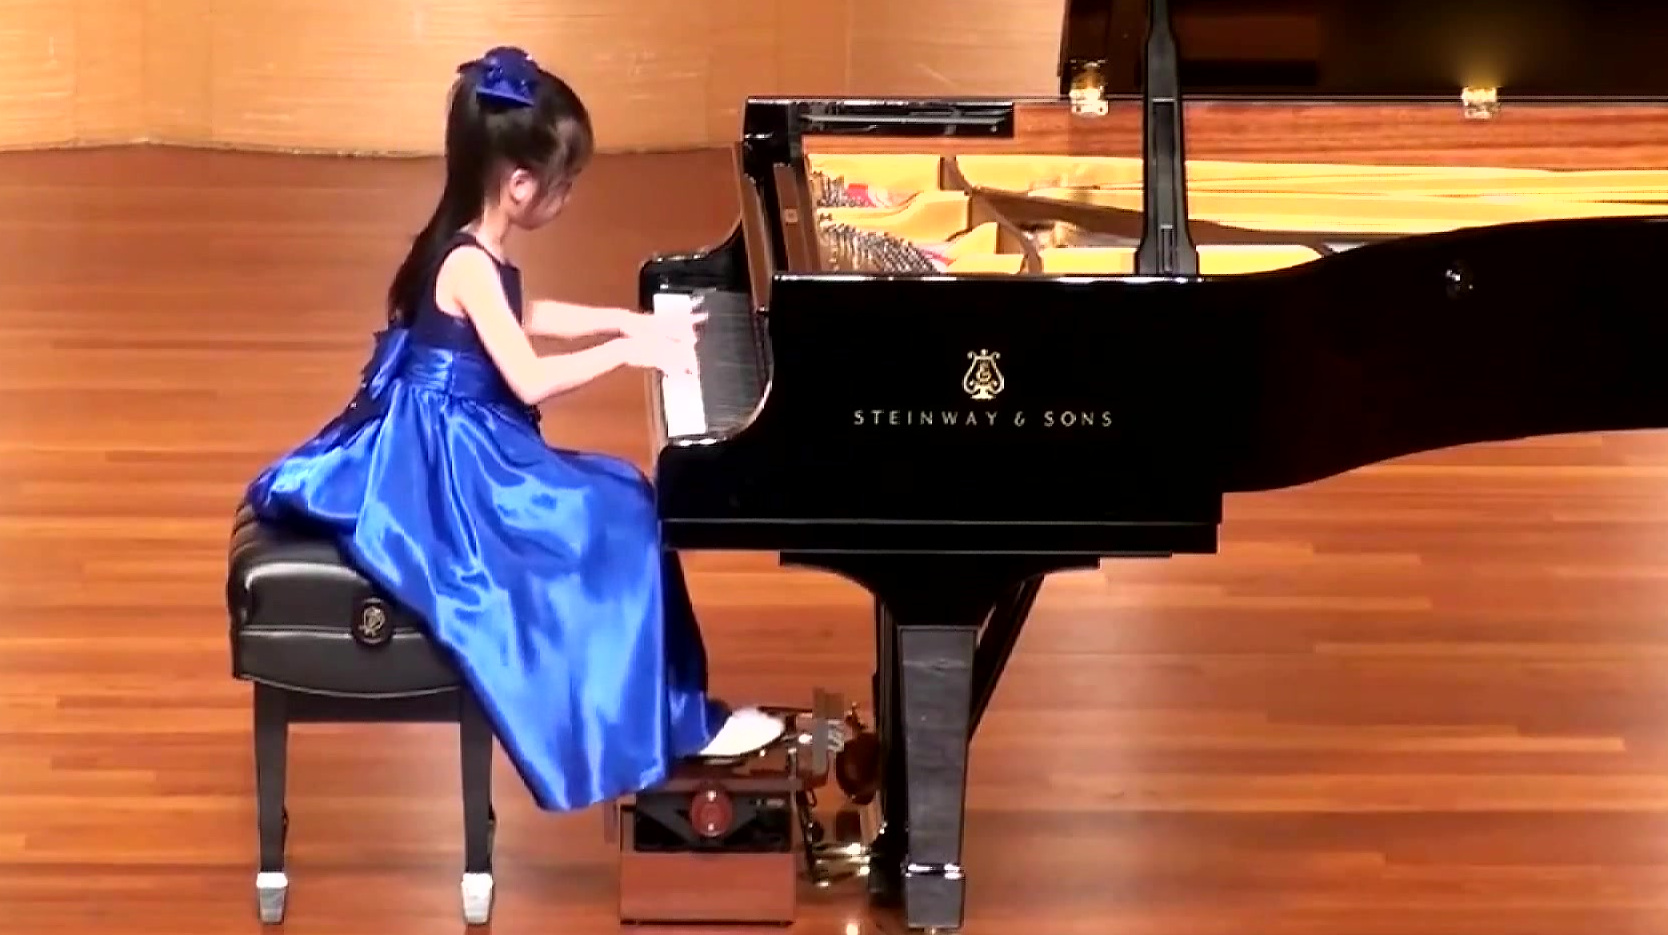 小女孩钢琴演奏发型图片